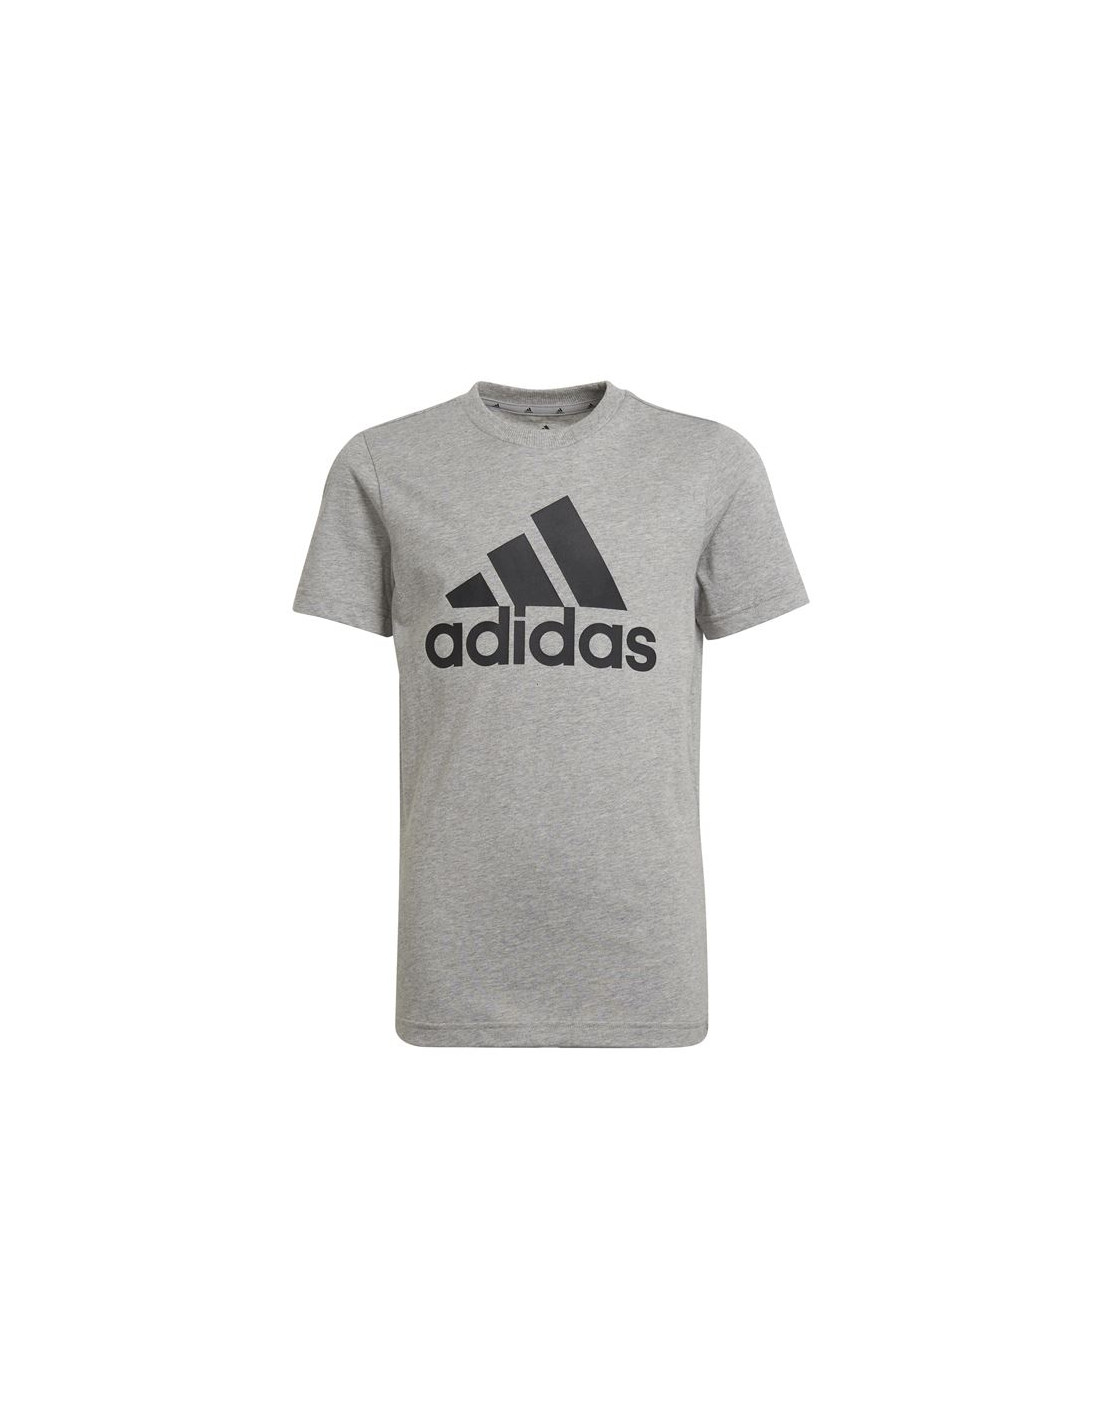 Camiseta adidas essentials boys grey